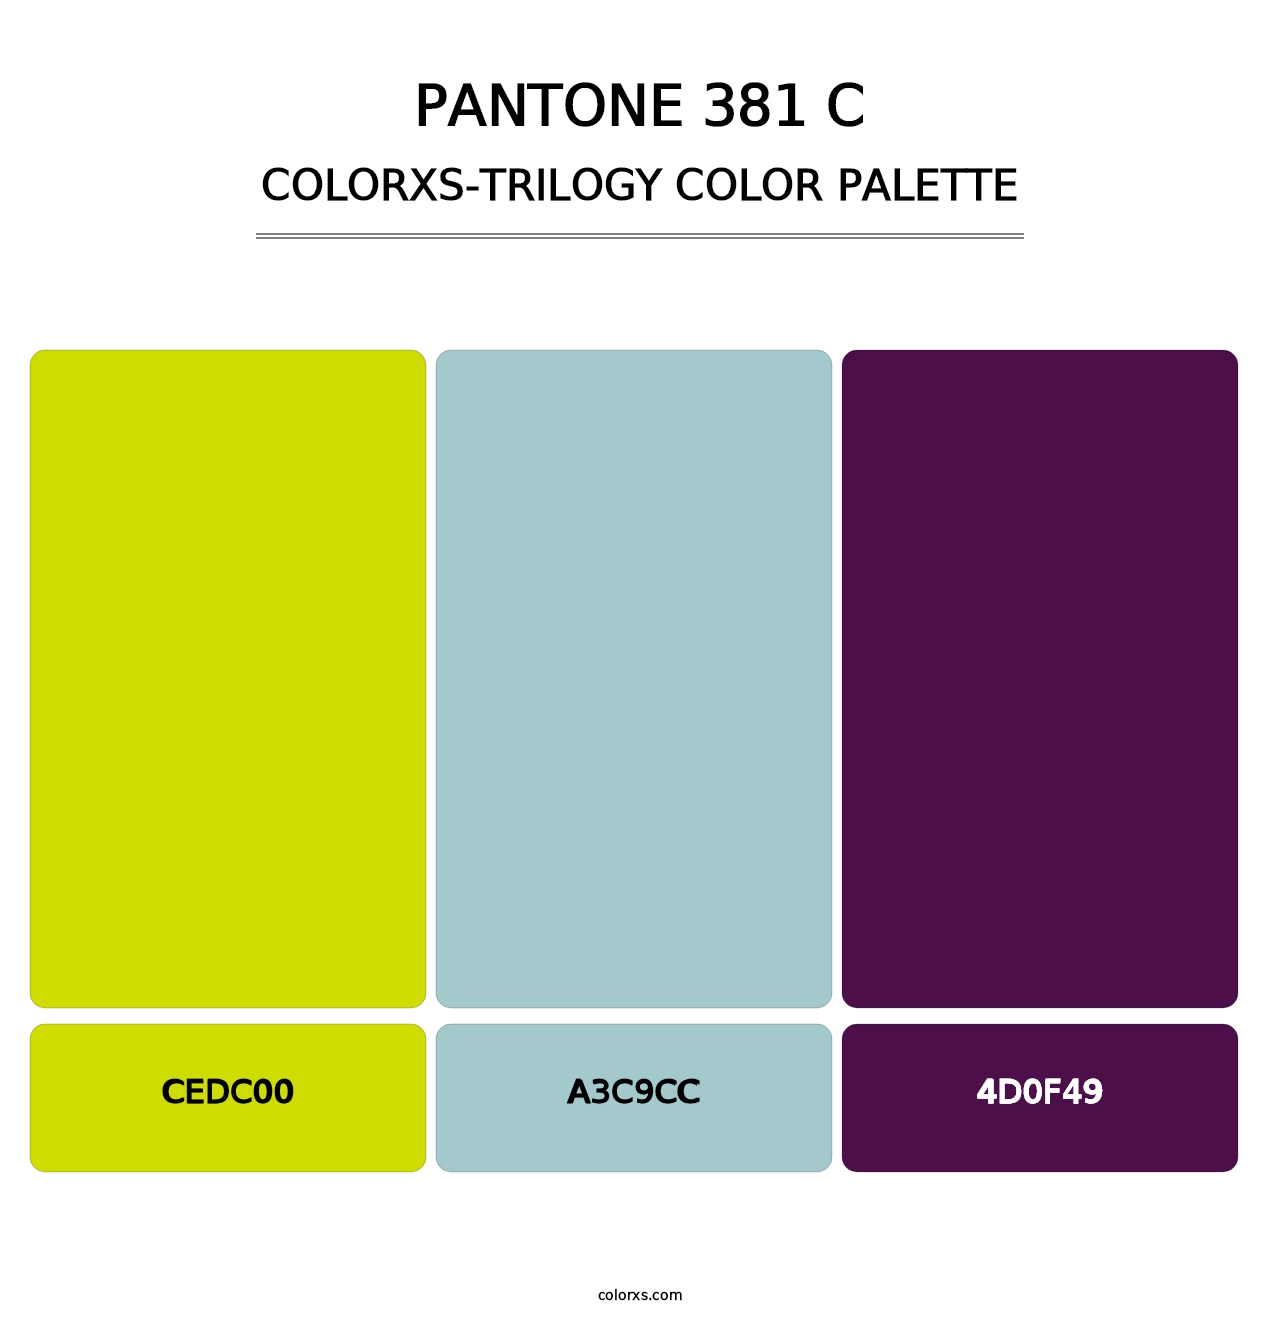 PANTONE 381 C - Colorxs Trilogy Palette